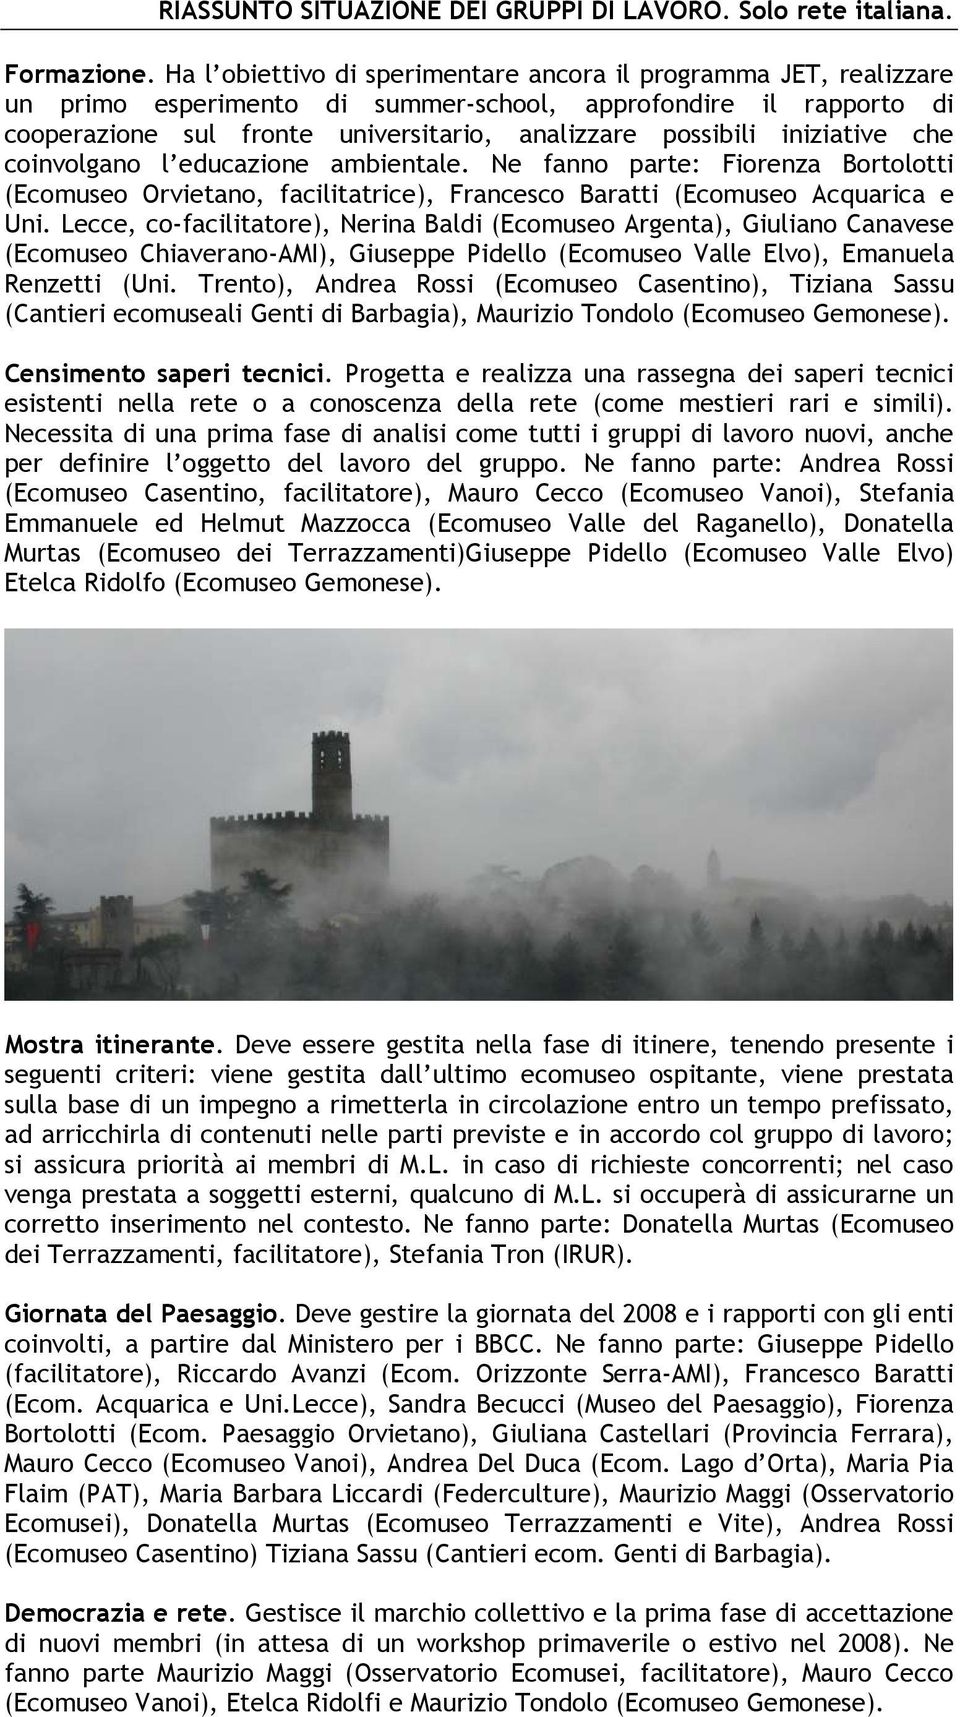 iniziative che coinvolgano l educazione ambientale. Ne fanno parte: Fiorenza Bortolotti (Ecomuseo Orvietano, facilitatrice), Francesco Baratti (Ecomuseo Acquarica e Uni.